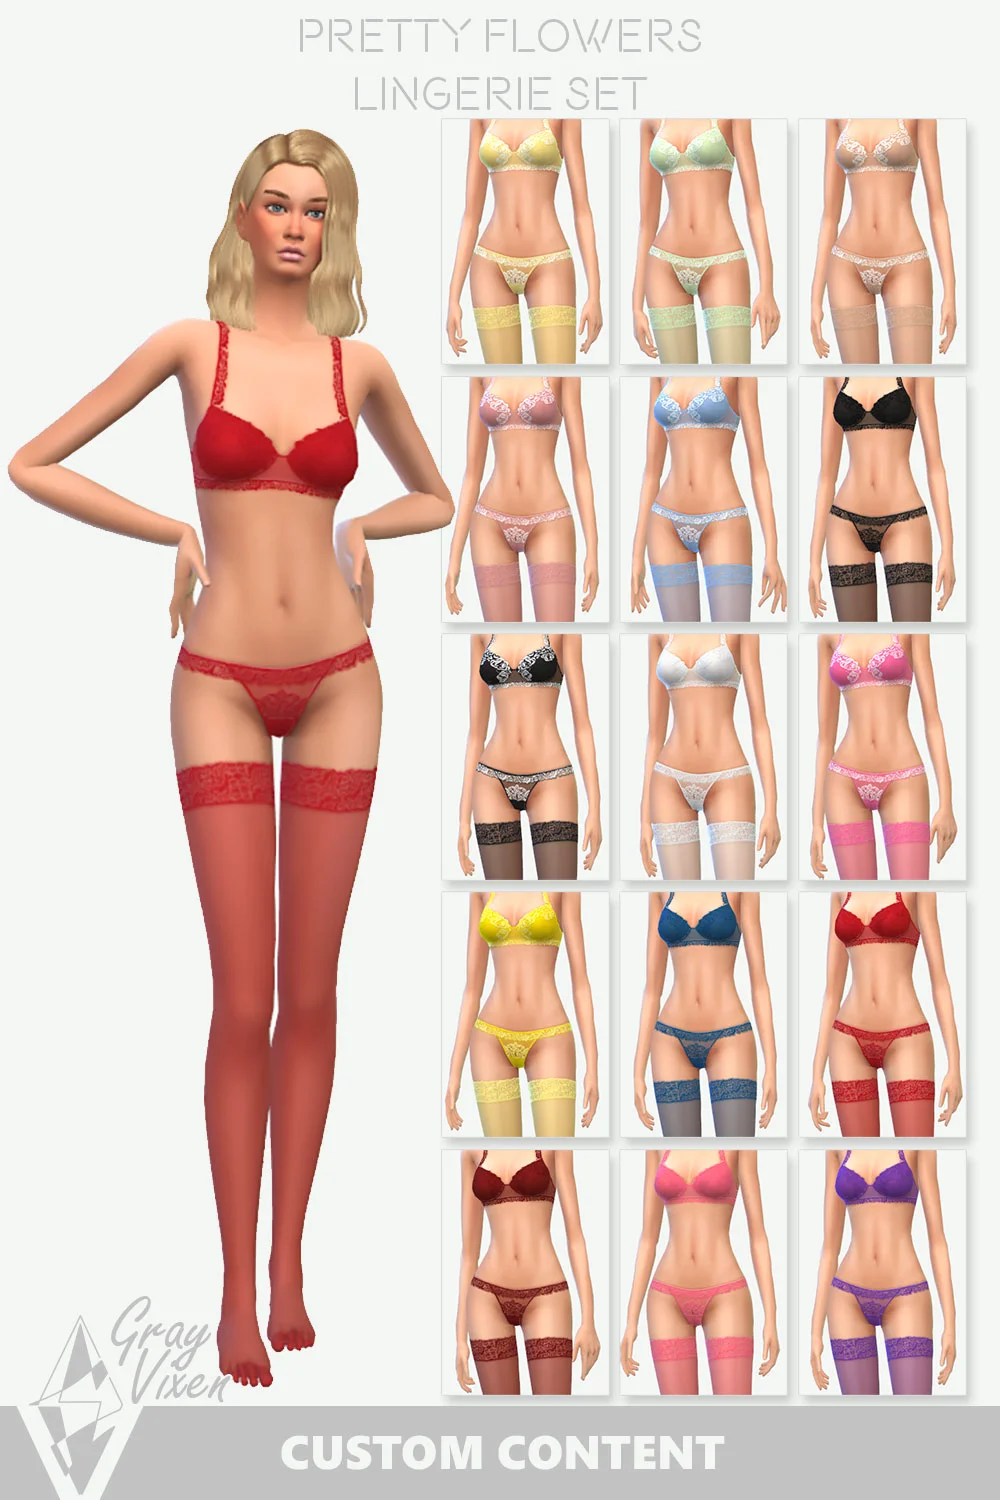 The Sims 4 Lingerie Set Colors